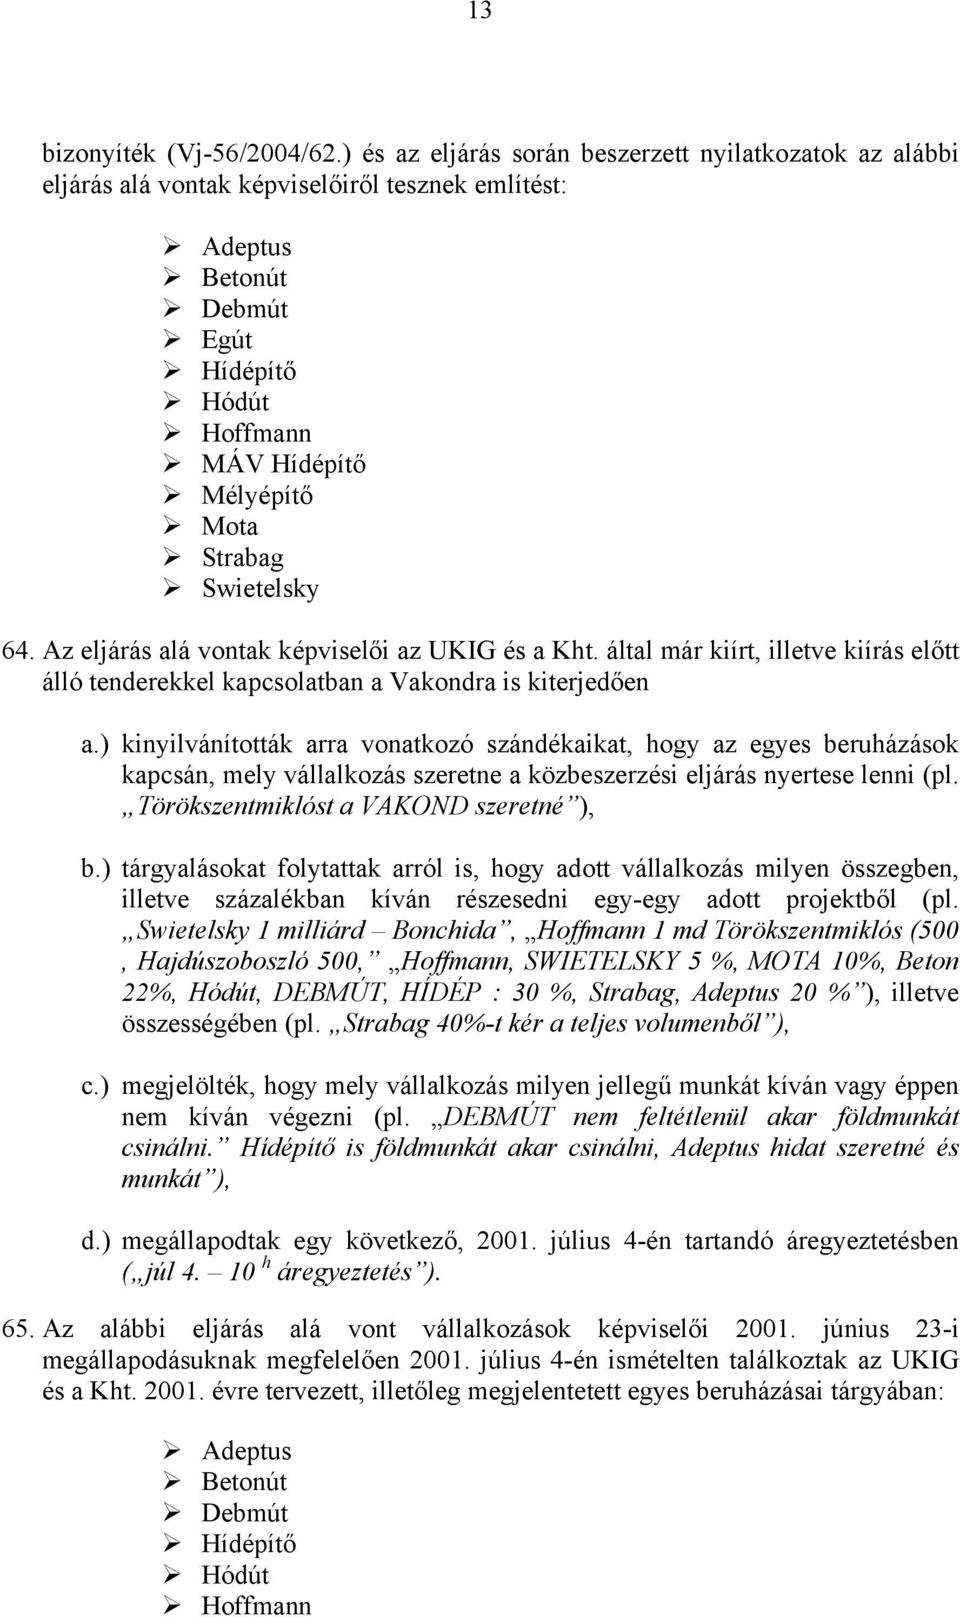 Swietelsky 64. Az eljárás alá vontak képviselői az UKIG és a Kht. által már kiírt, illetve kiírás előtt álló tenderekkel kapcsolatban a Vakondra is kiterjedően a.